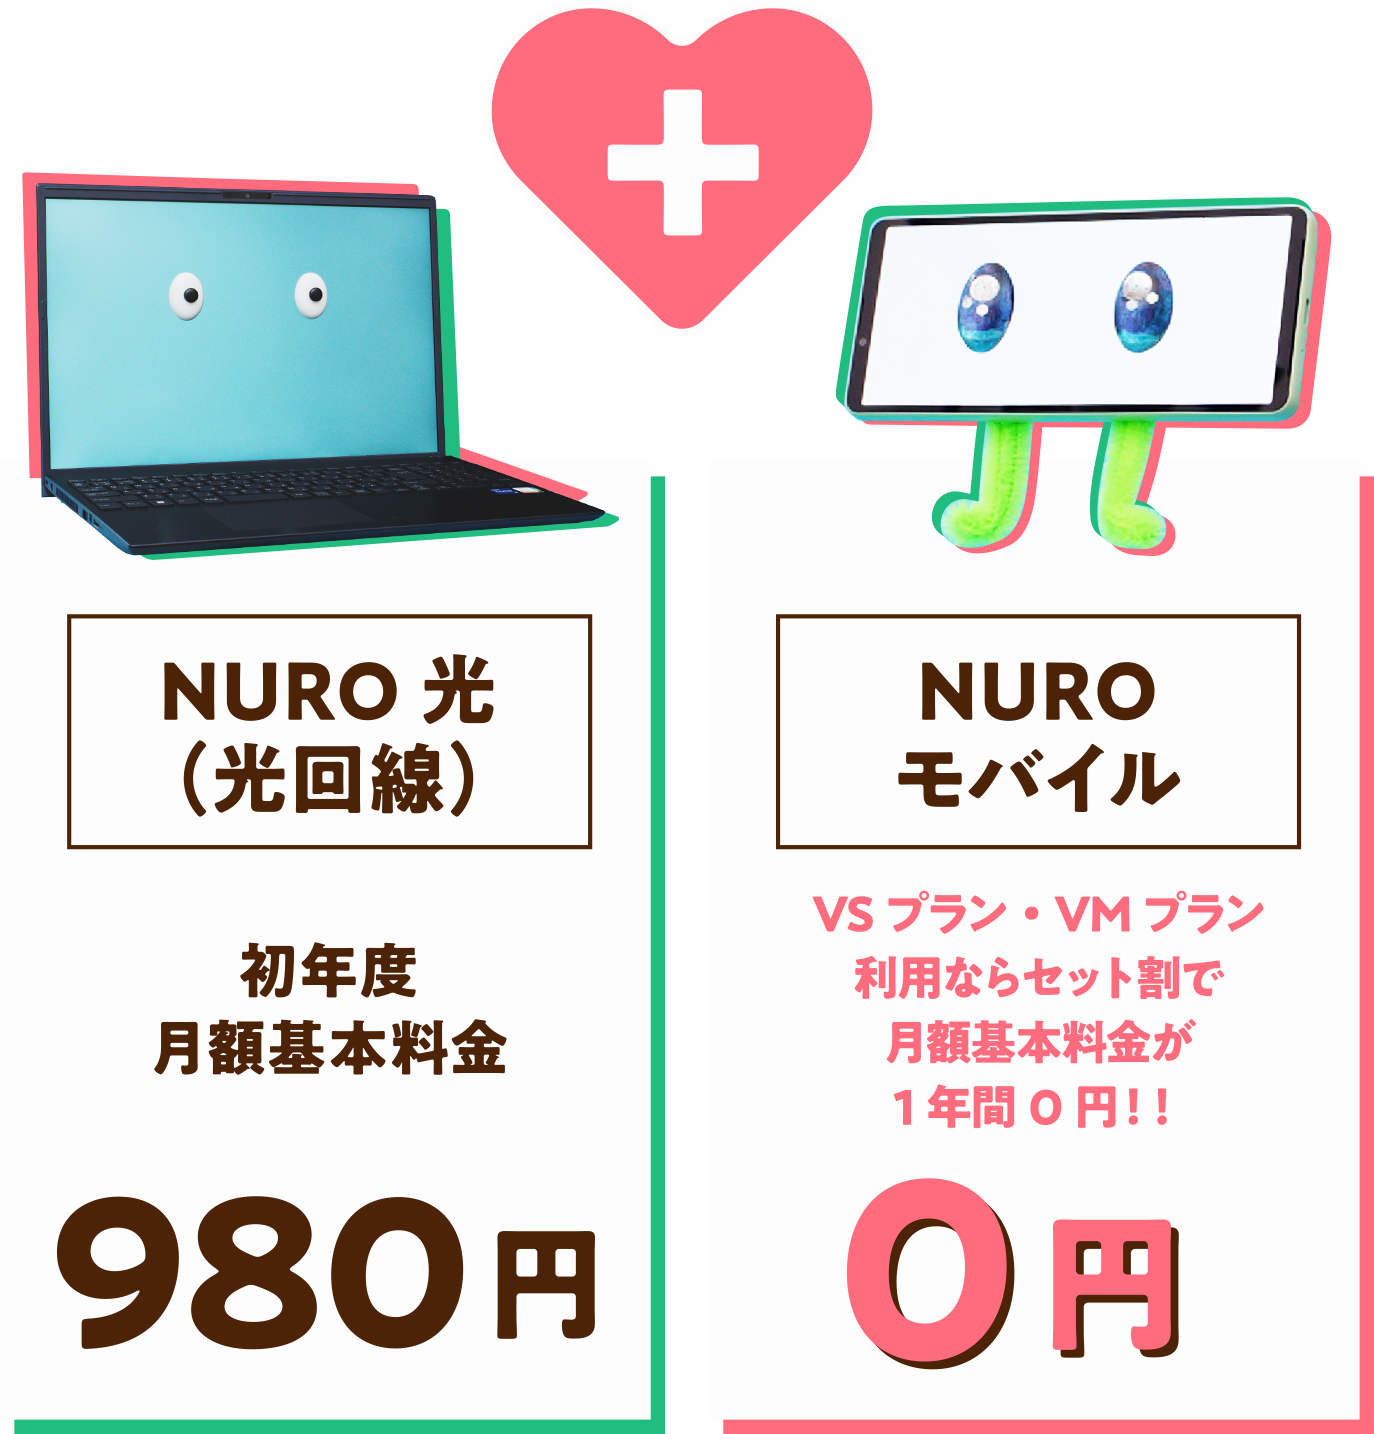 NURO光（光回線） 初年度 月額基本料金 980円 NUROモバイル VSプラン・VMプラン利用ならセット割で 月額基本料金が1年間0円！！ 0円